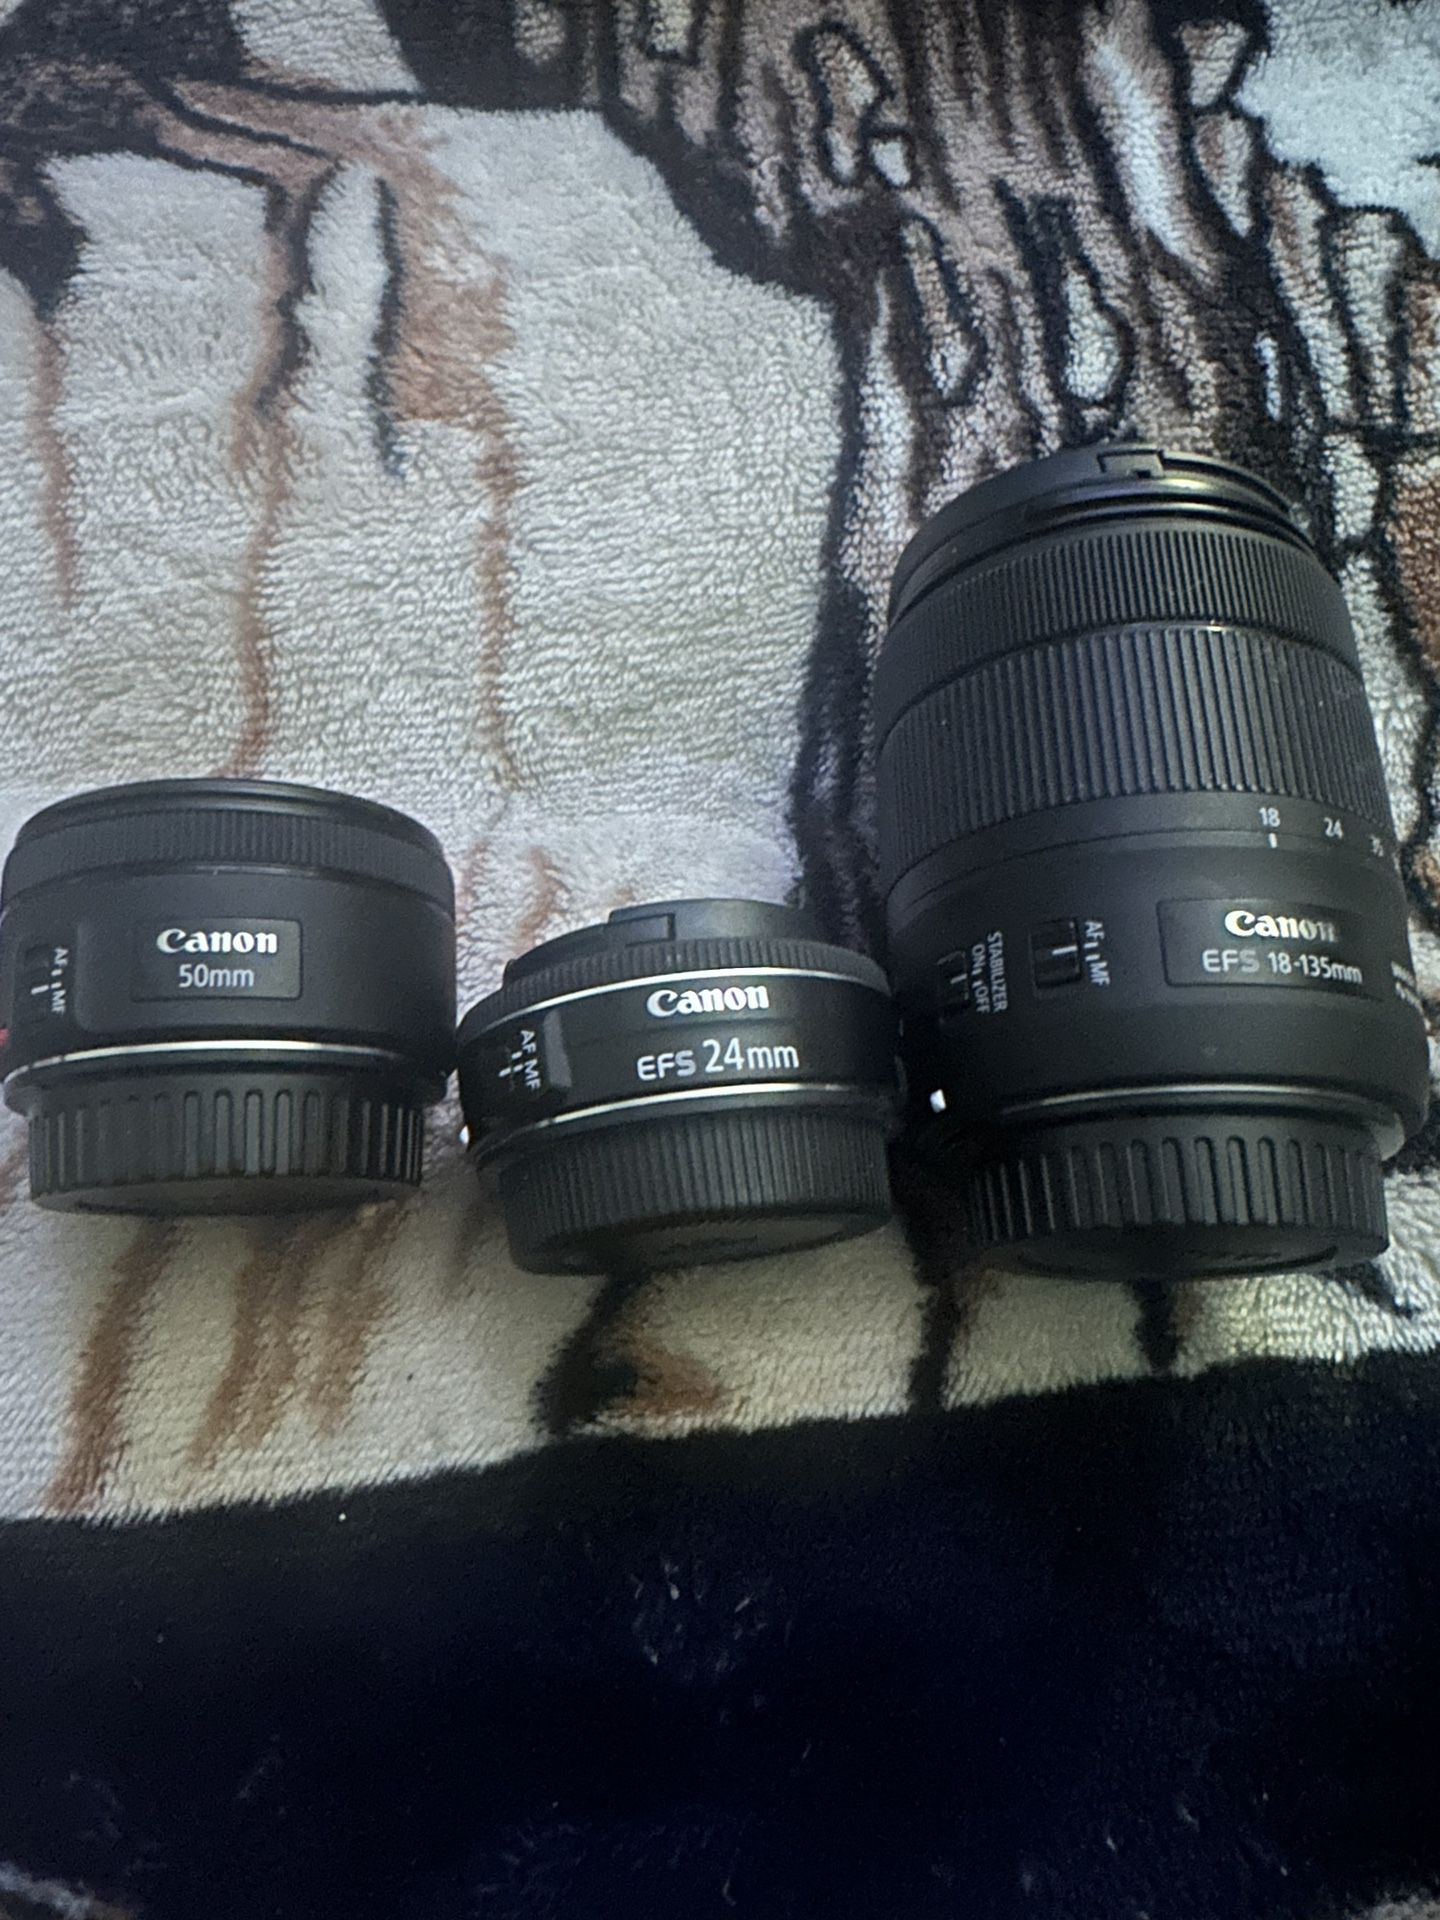 Canon Lenses 24mm, 50mm, 18-135mm